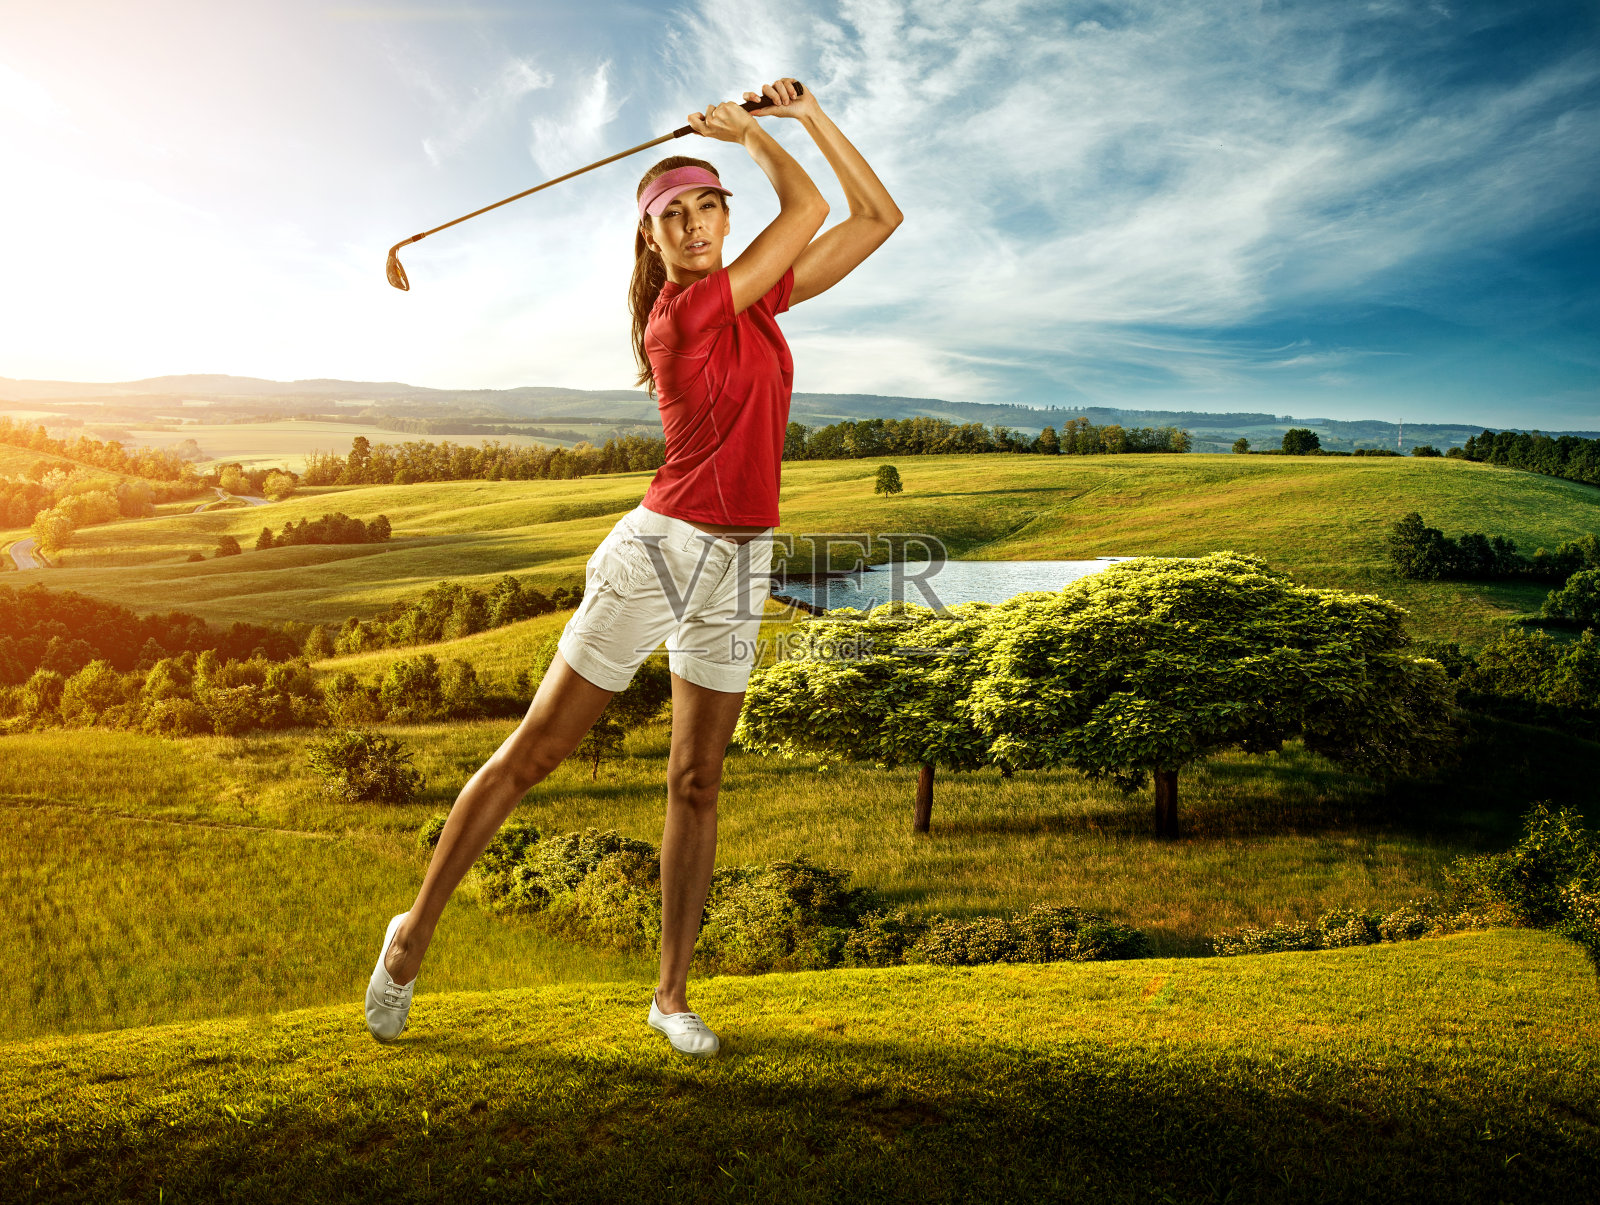 女子高尔夫球手击球的背景风景美丽照片摄影图片